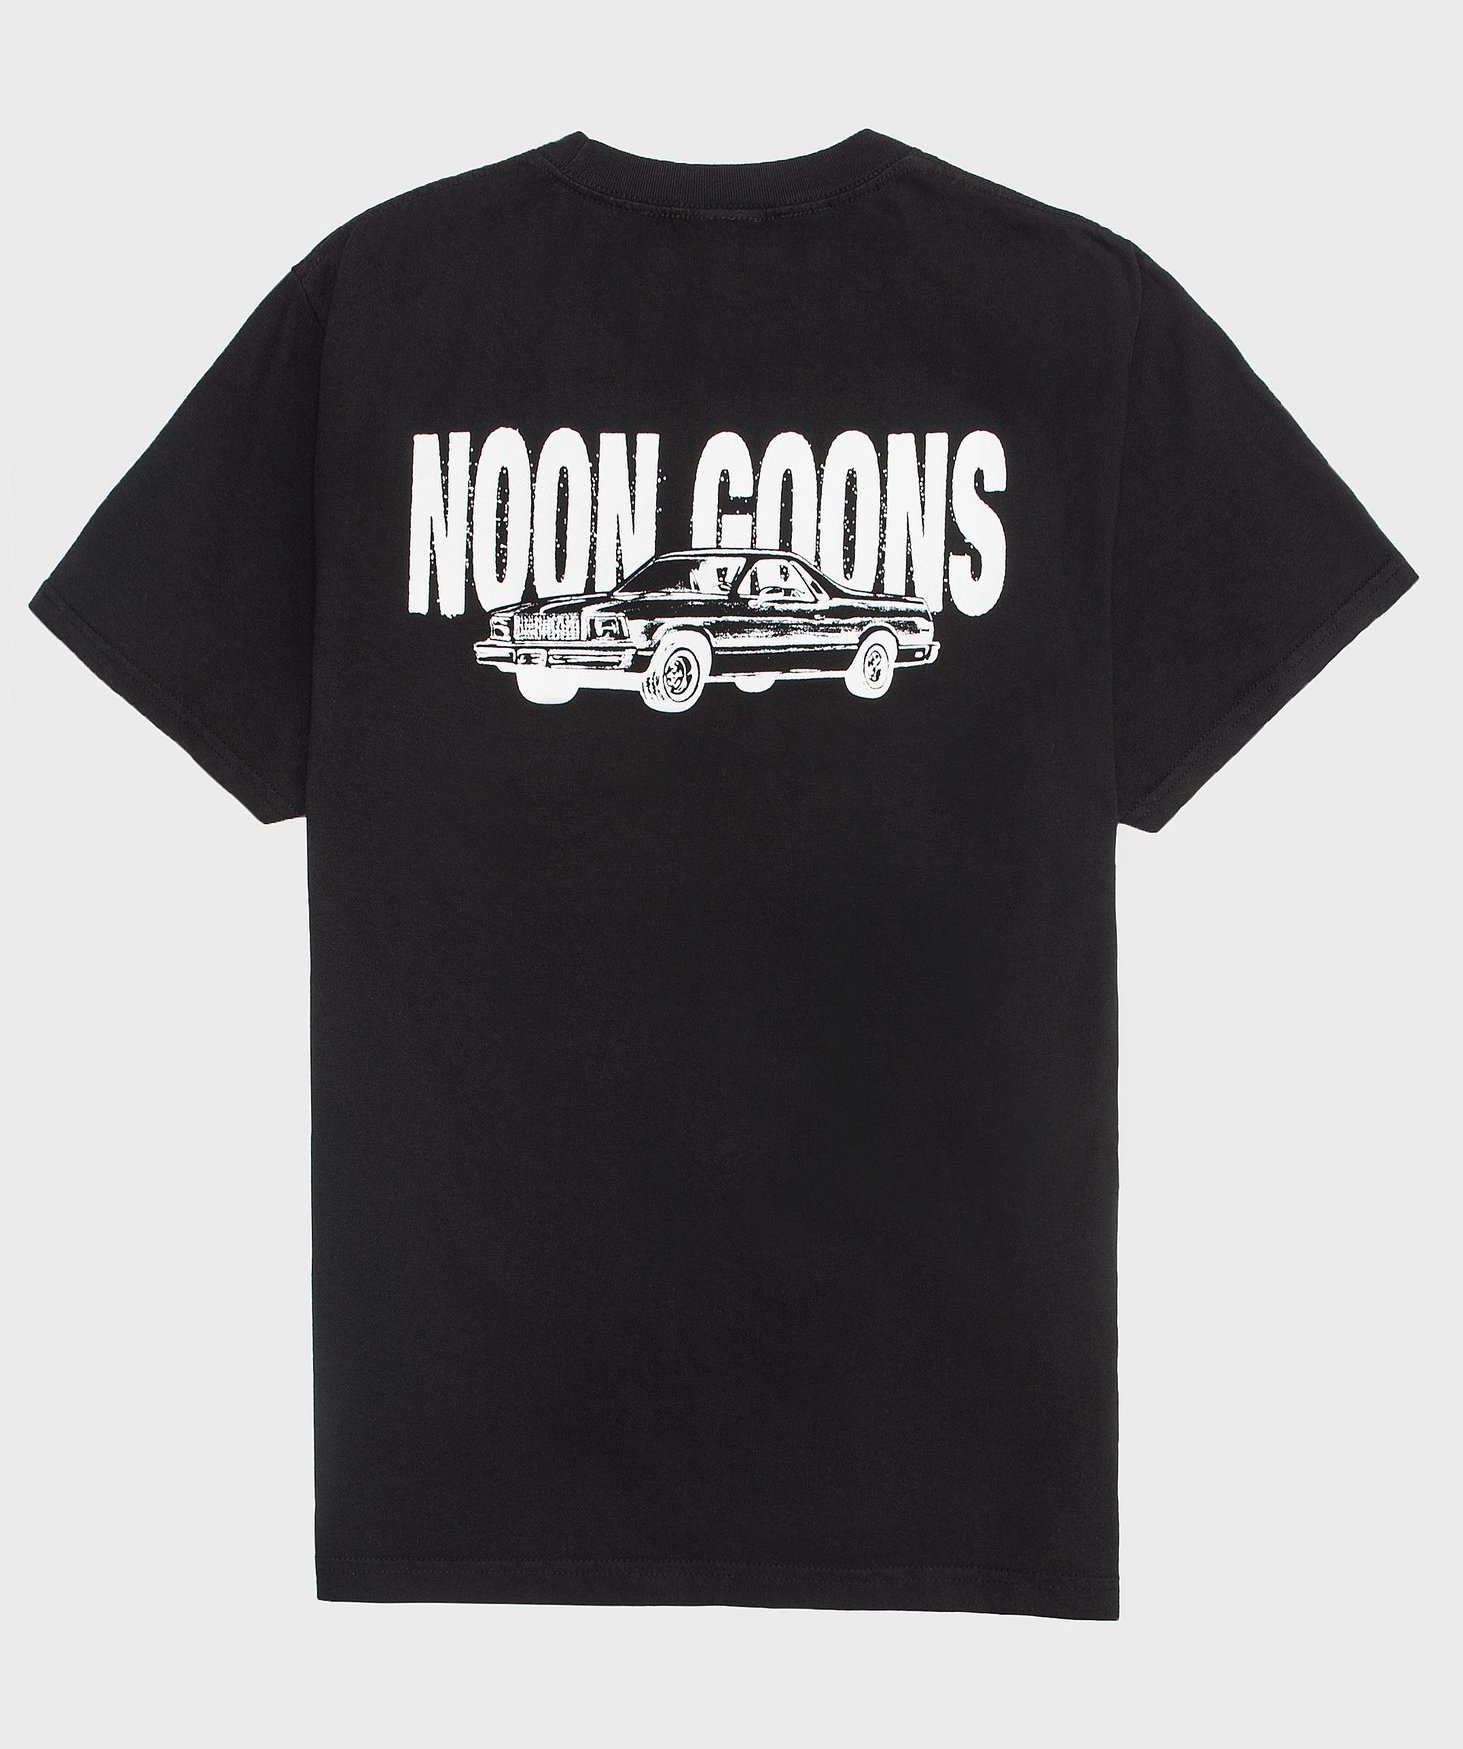 Noon Goons El Camino T shirt